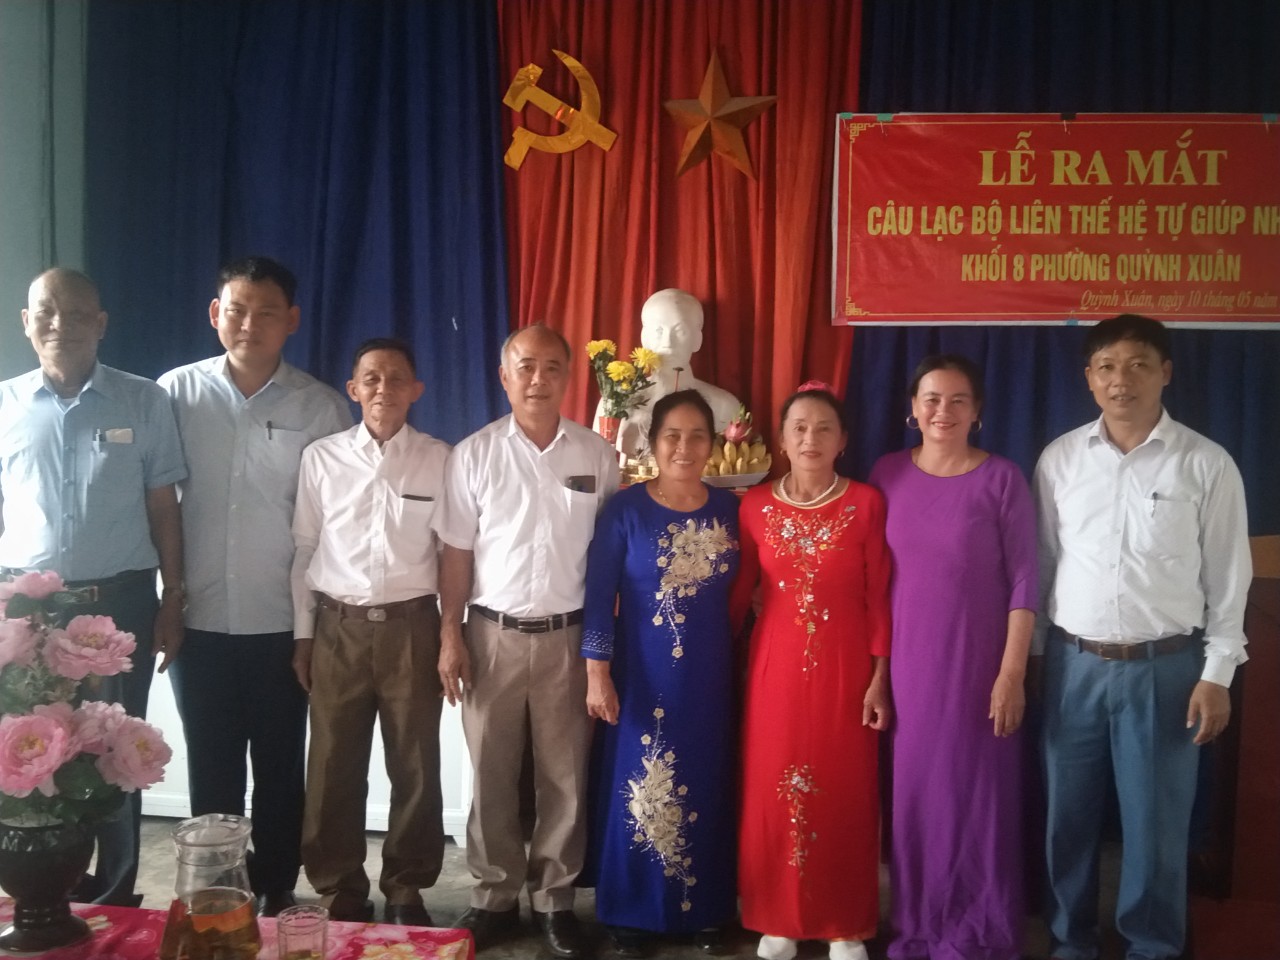 Ra mắt Câu lạc bộ Liên thế hệ tự giúp nhau tại khối 8, phường Quỳnh Xuân